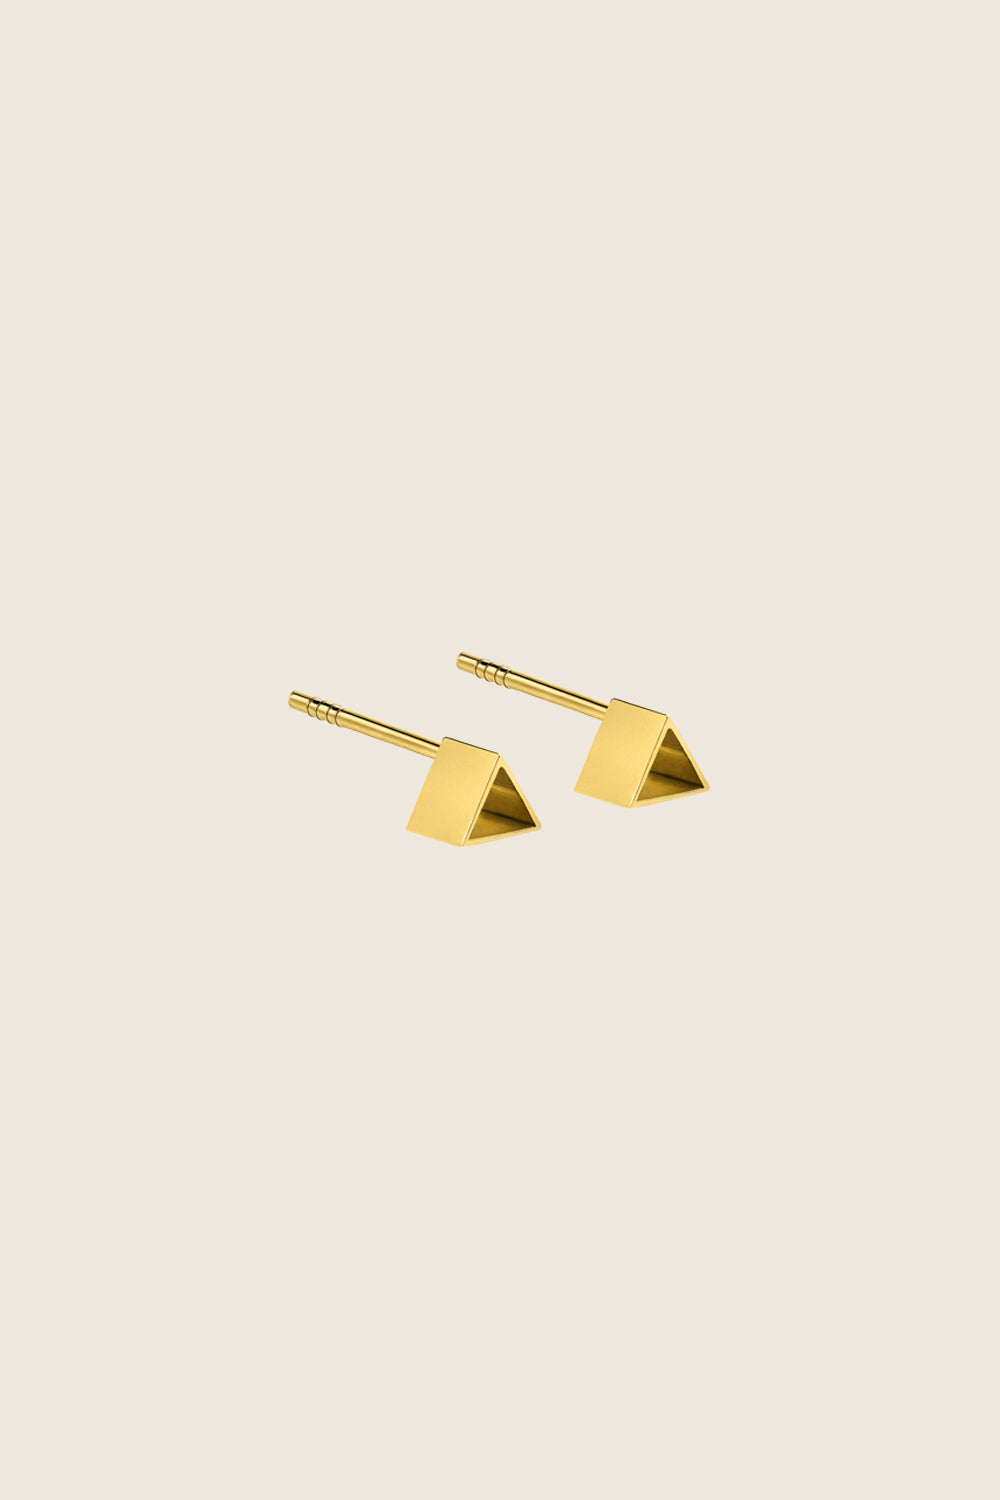 złote kolczyki trójkąty na sztyfcie srebro 925 pozłacane LARO marka UMIAR